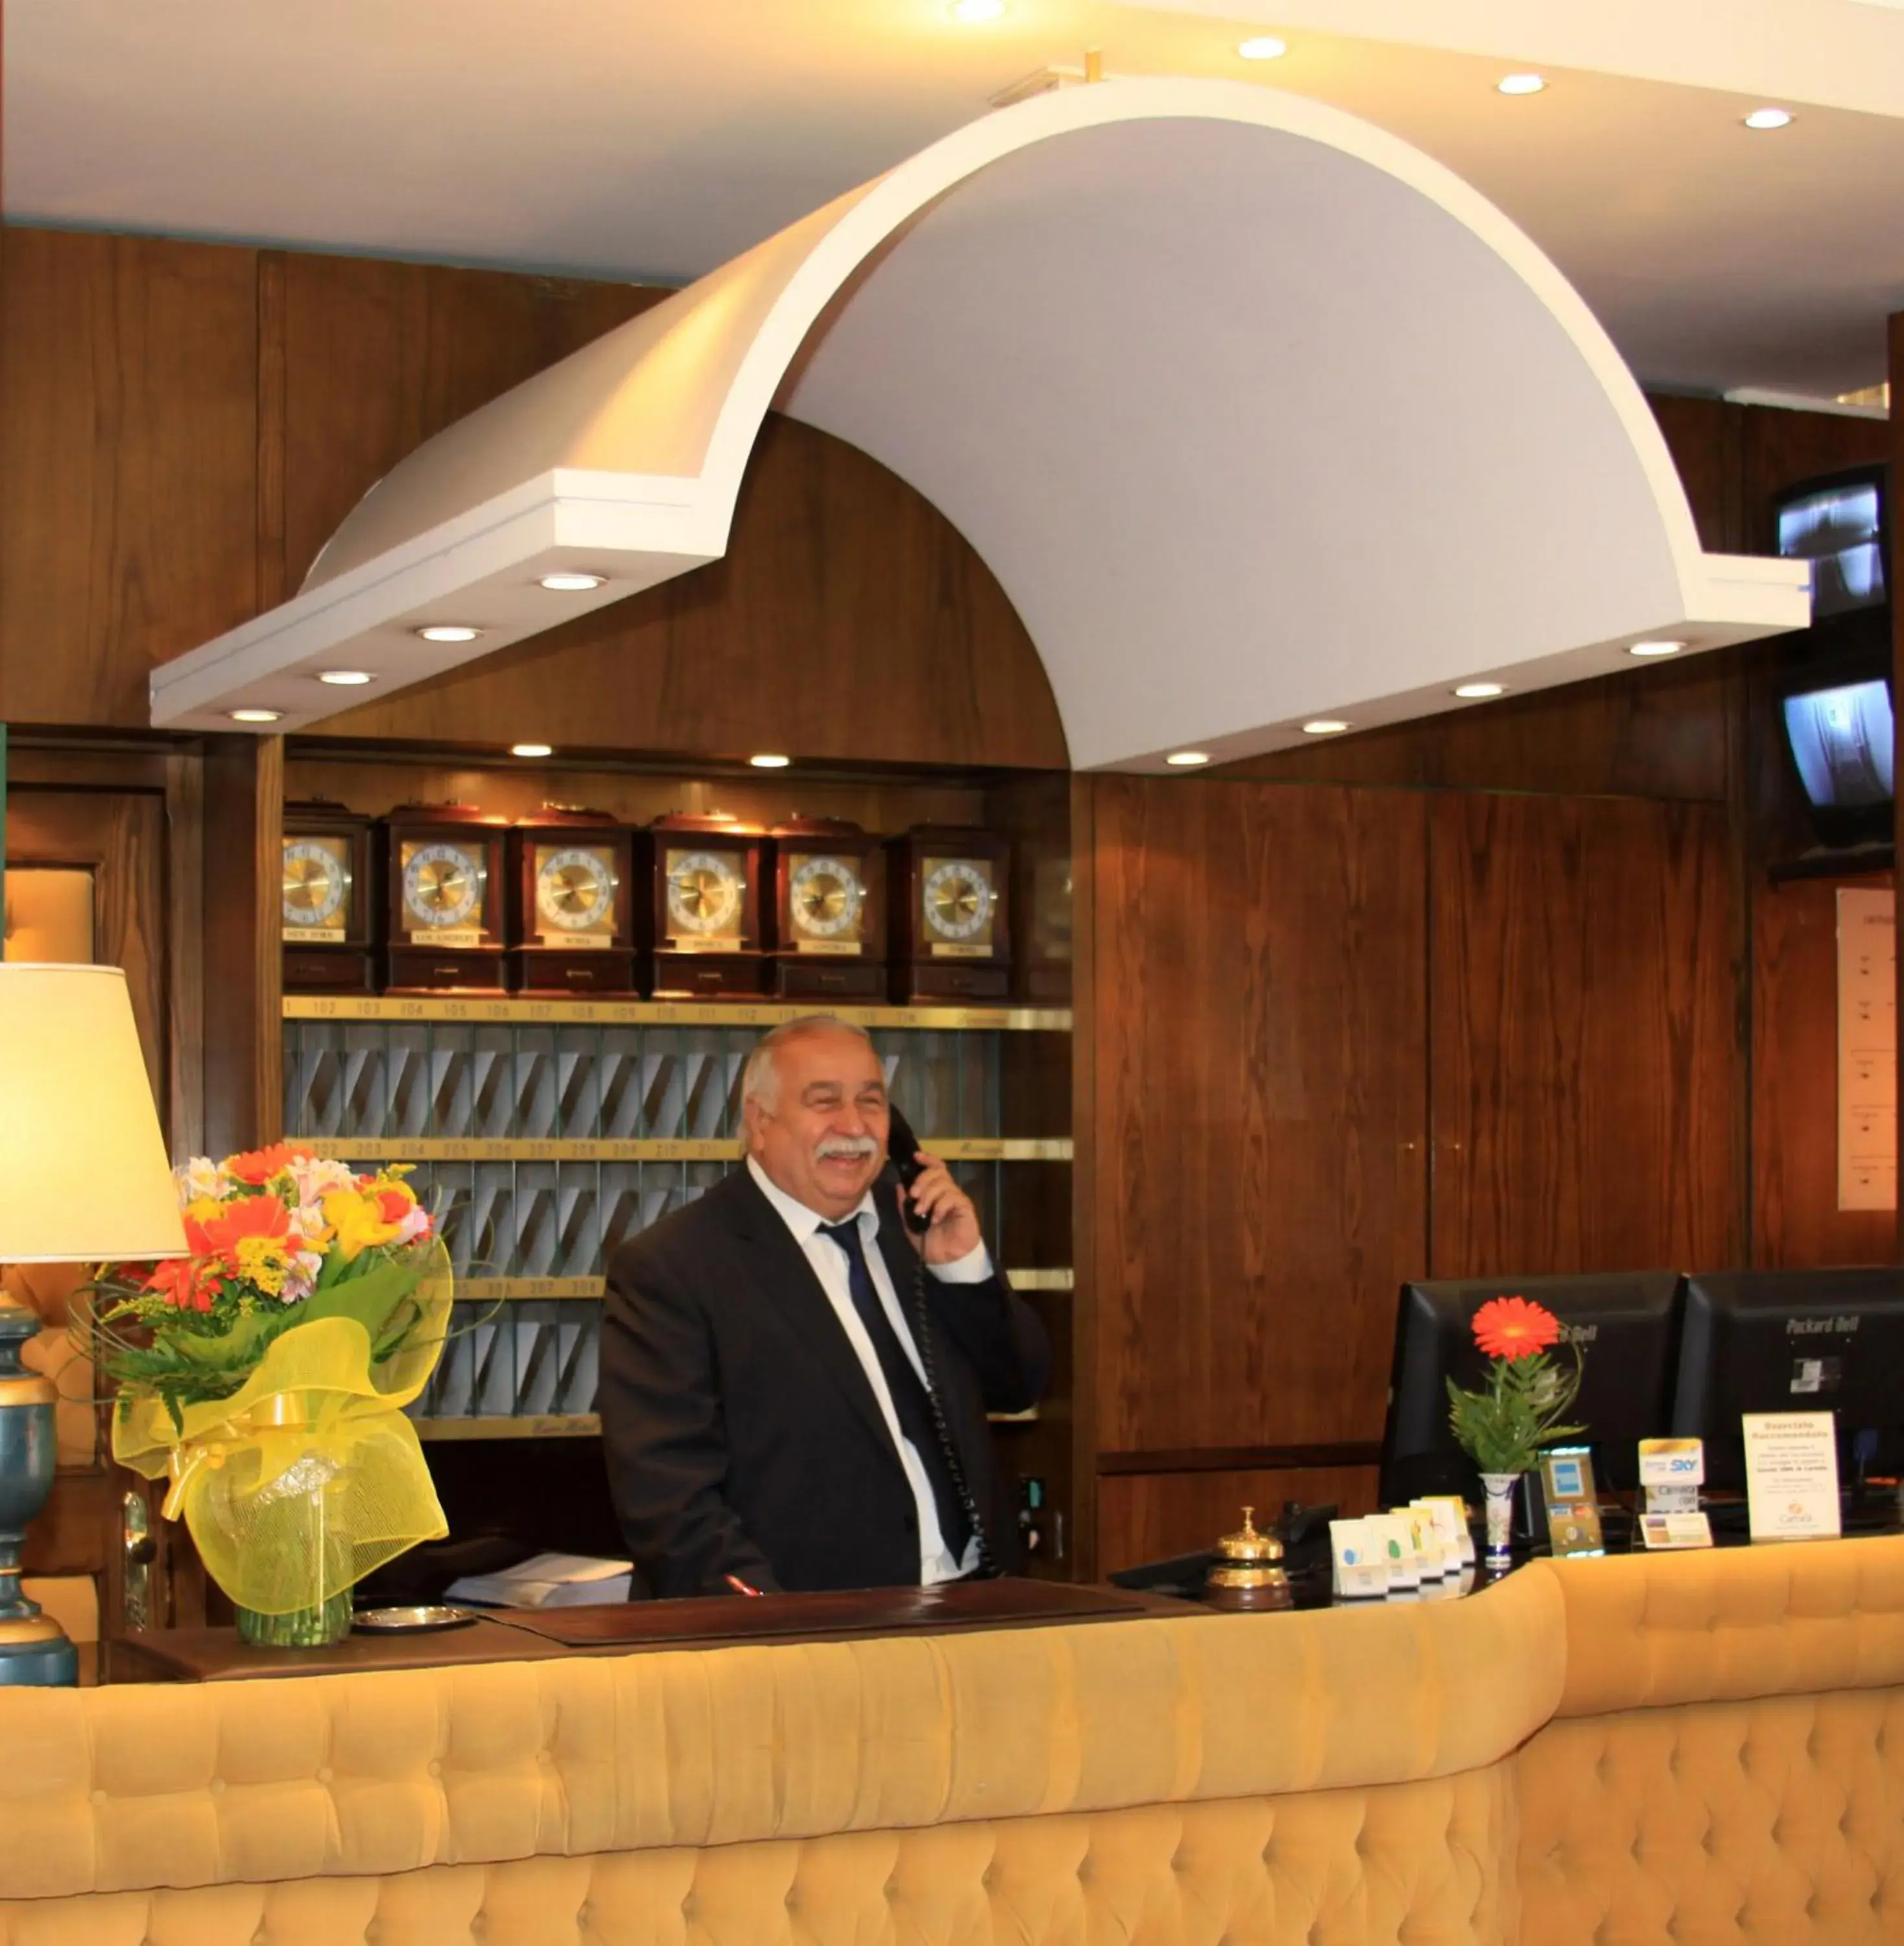 Staff, Lobby/Reception in Euro Hotel